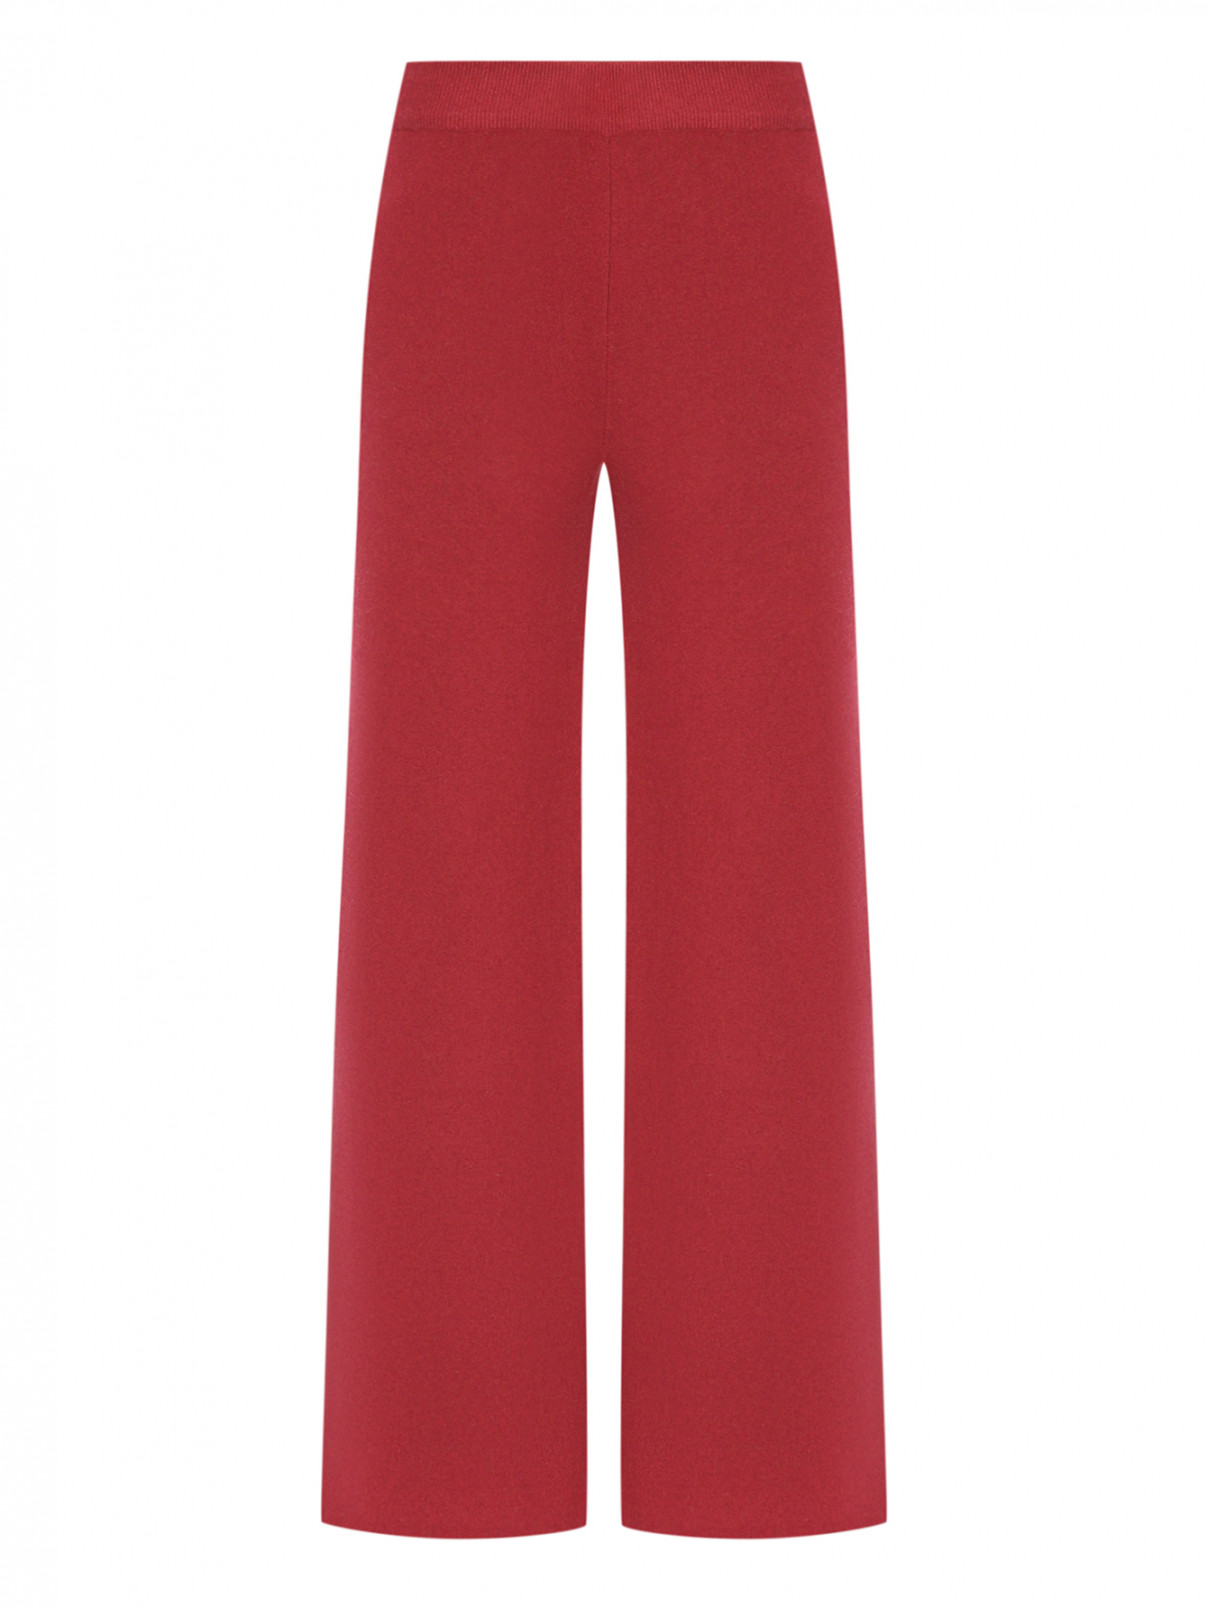 Широкие брюки из трикотажа Shade  –  Общий вид  – Цвет:  Красный